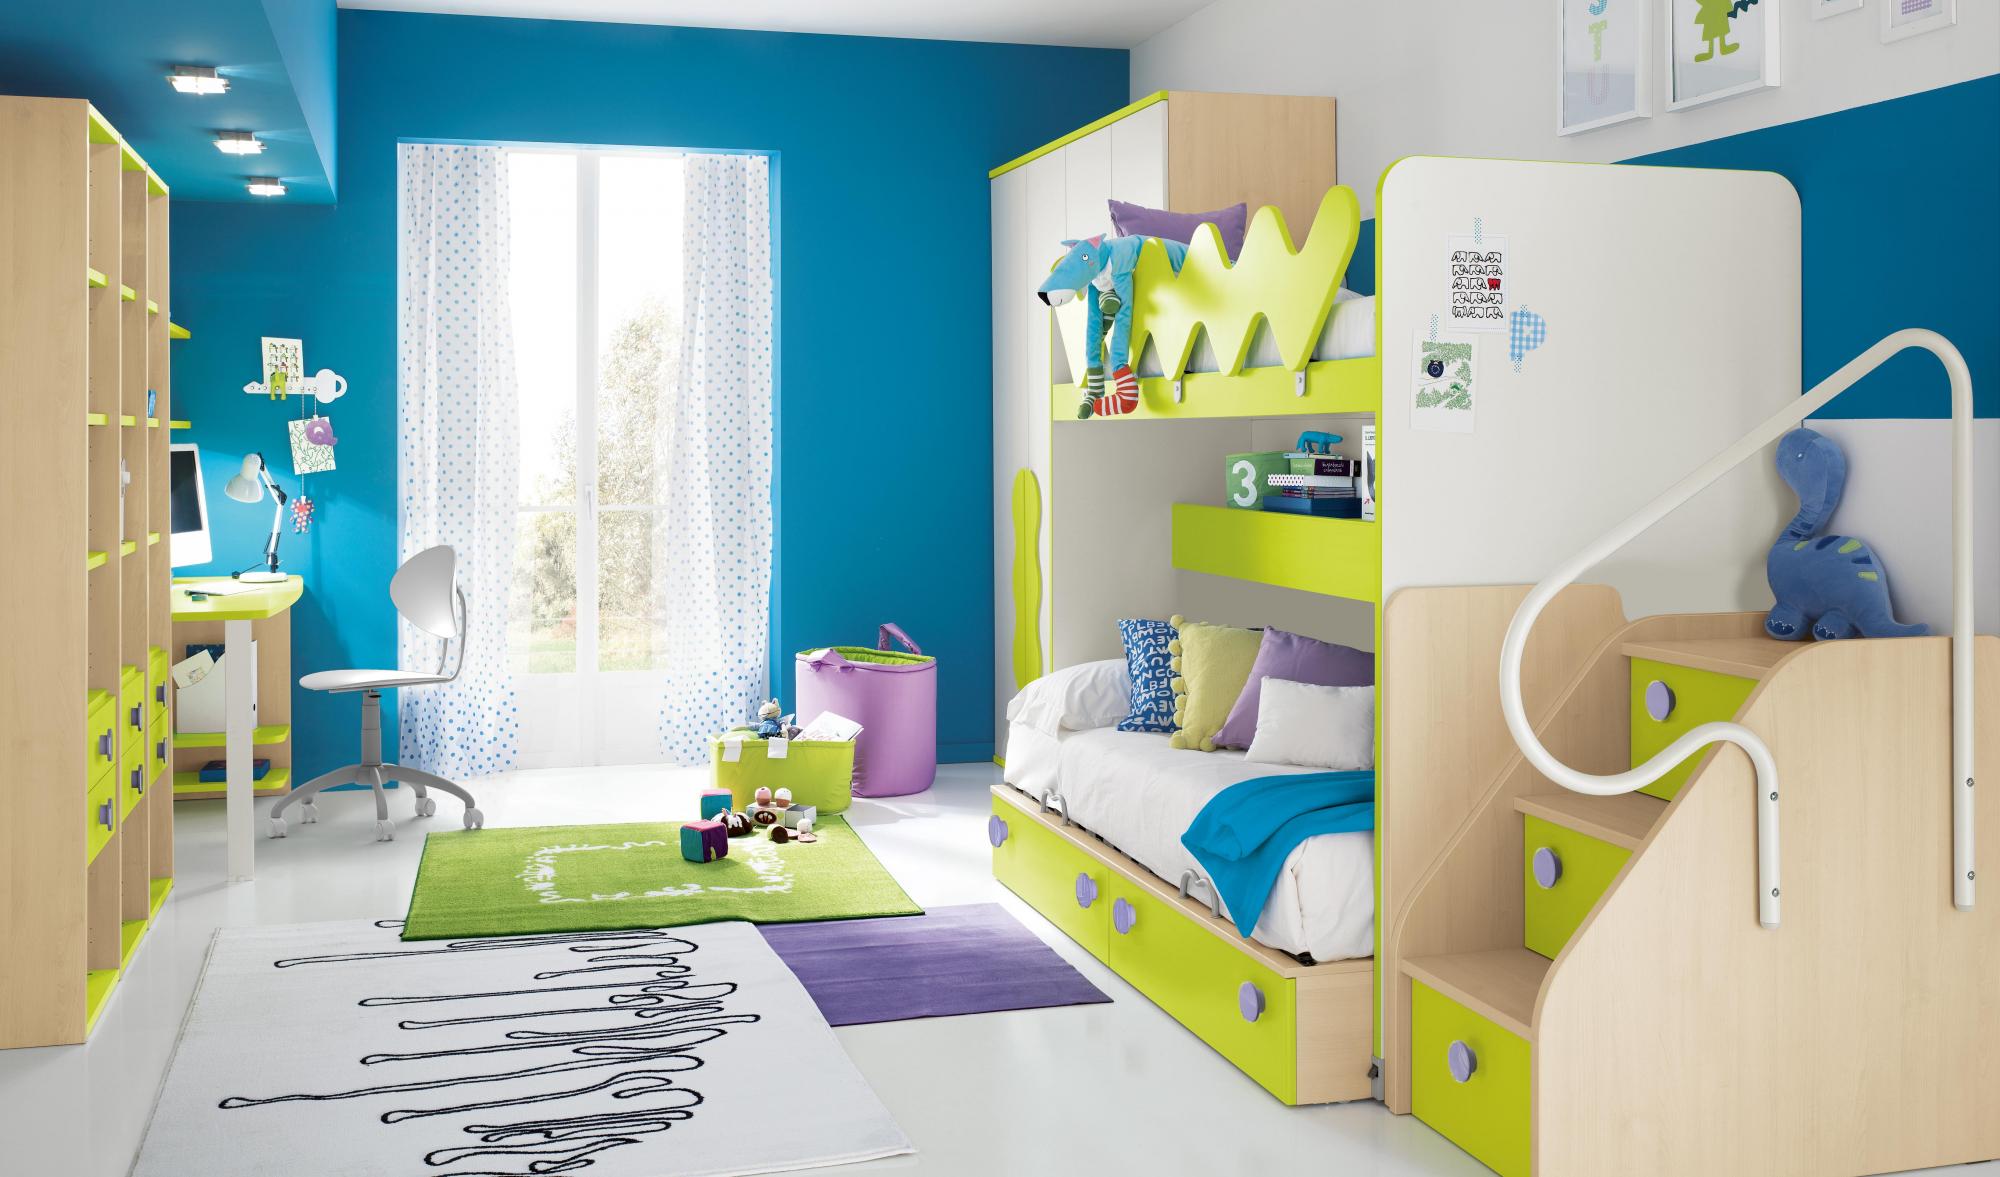 Комната кид. Детские комнаты. Детские спальни. Дизайнерская детская мебель. Интерьер детской комнаты.